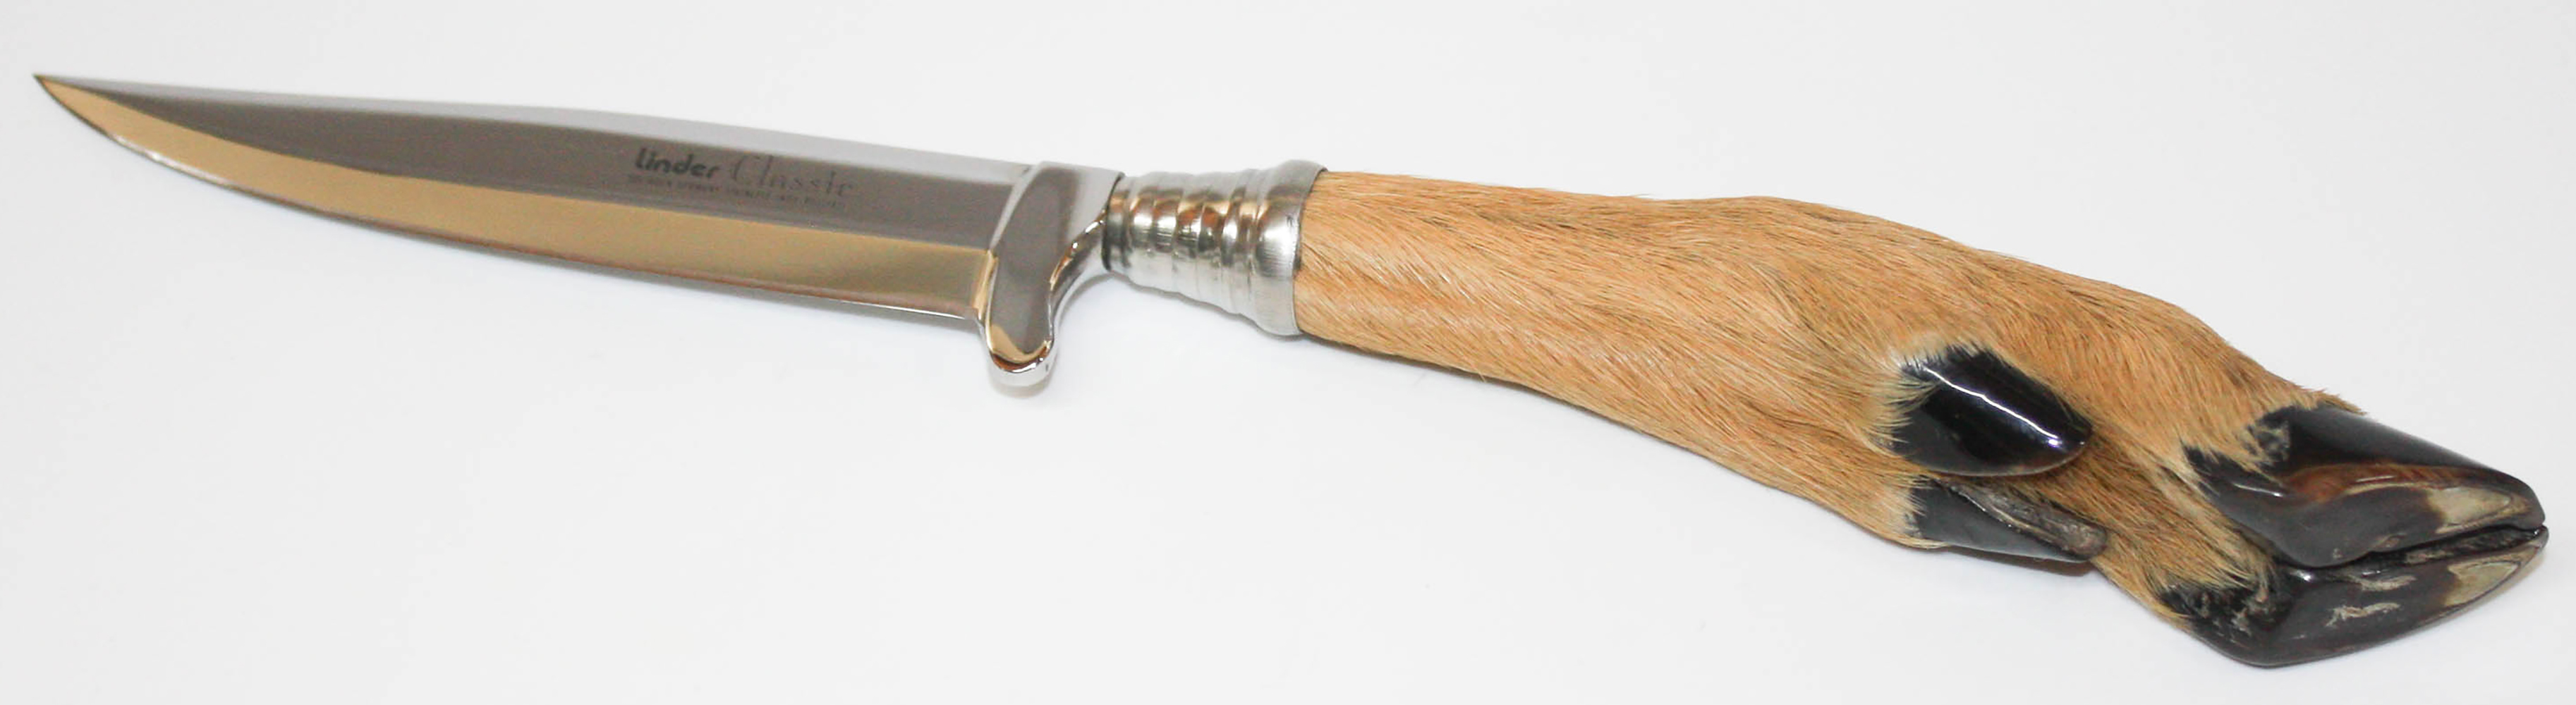 Linder Trachtenmesser Messer CLASSIC Klingenlänge 10.9 cm, 25.4 cm, 246111